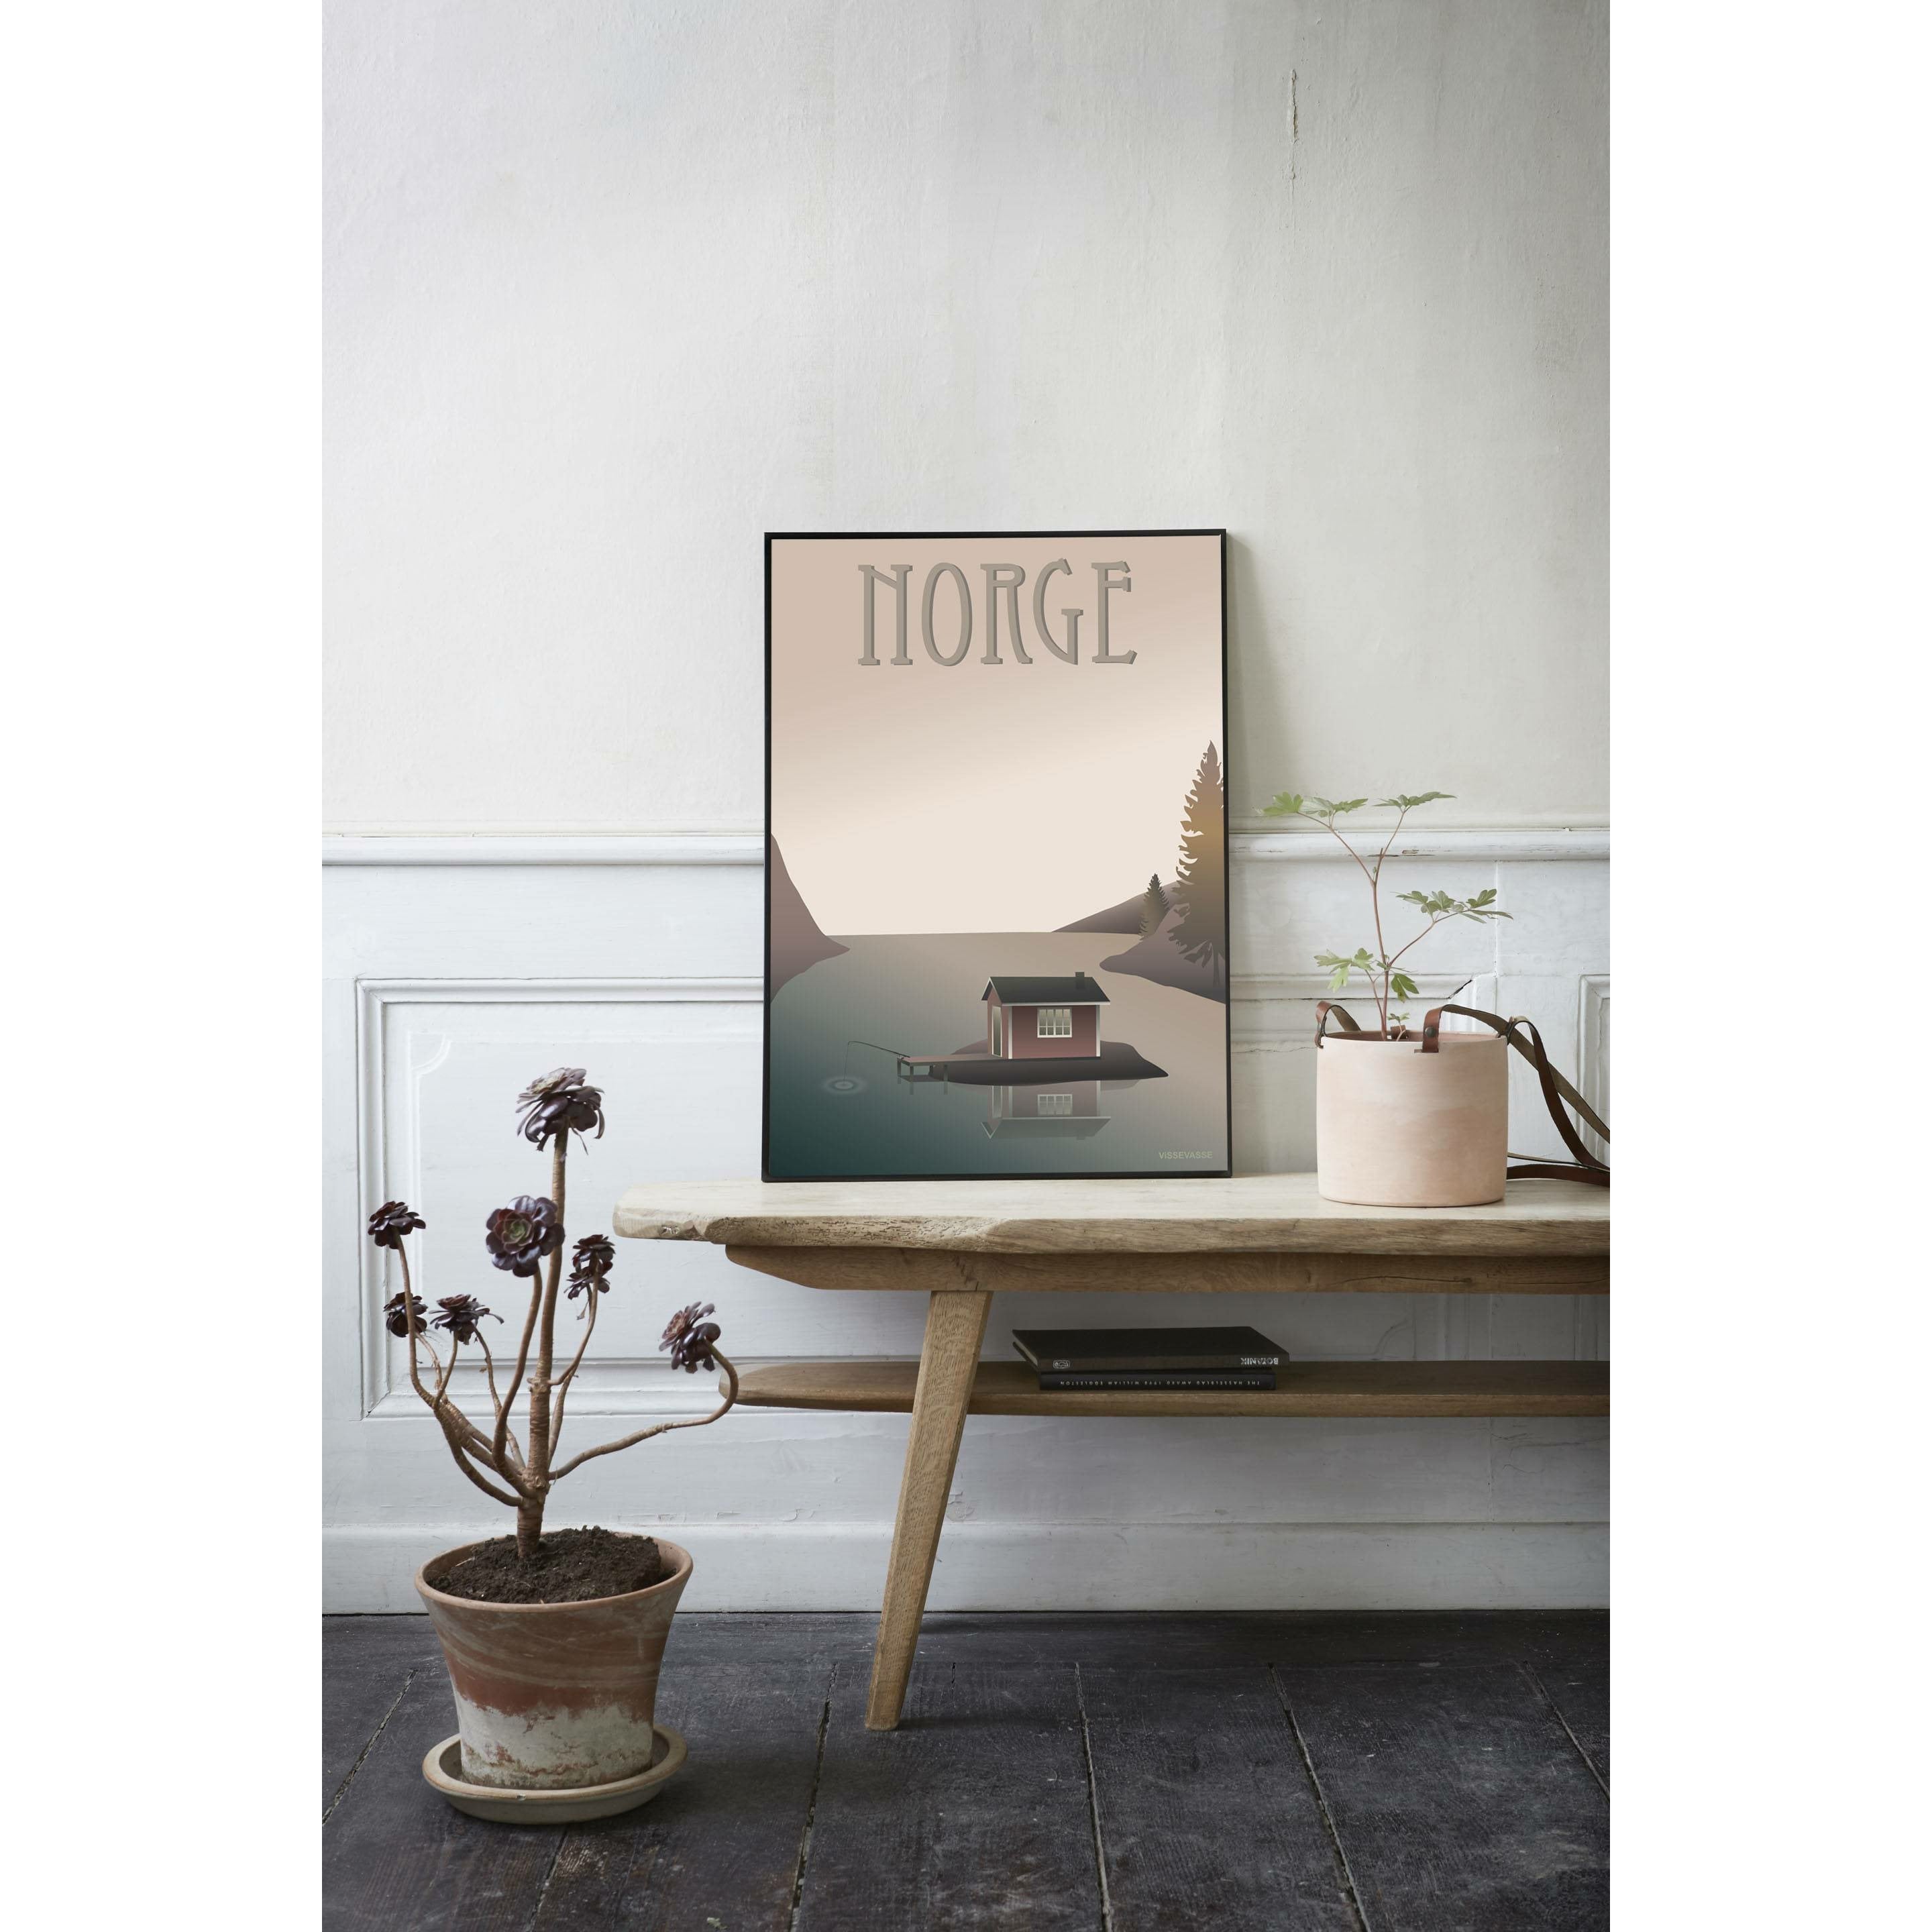 Vissevasse Norwegen ein abgelegenes Hausplakat, 30 x 40 cm